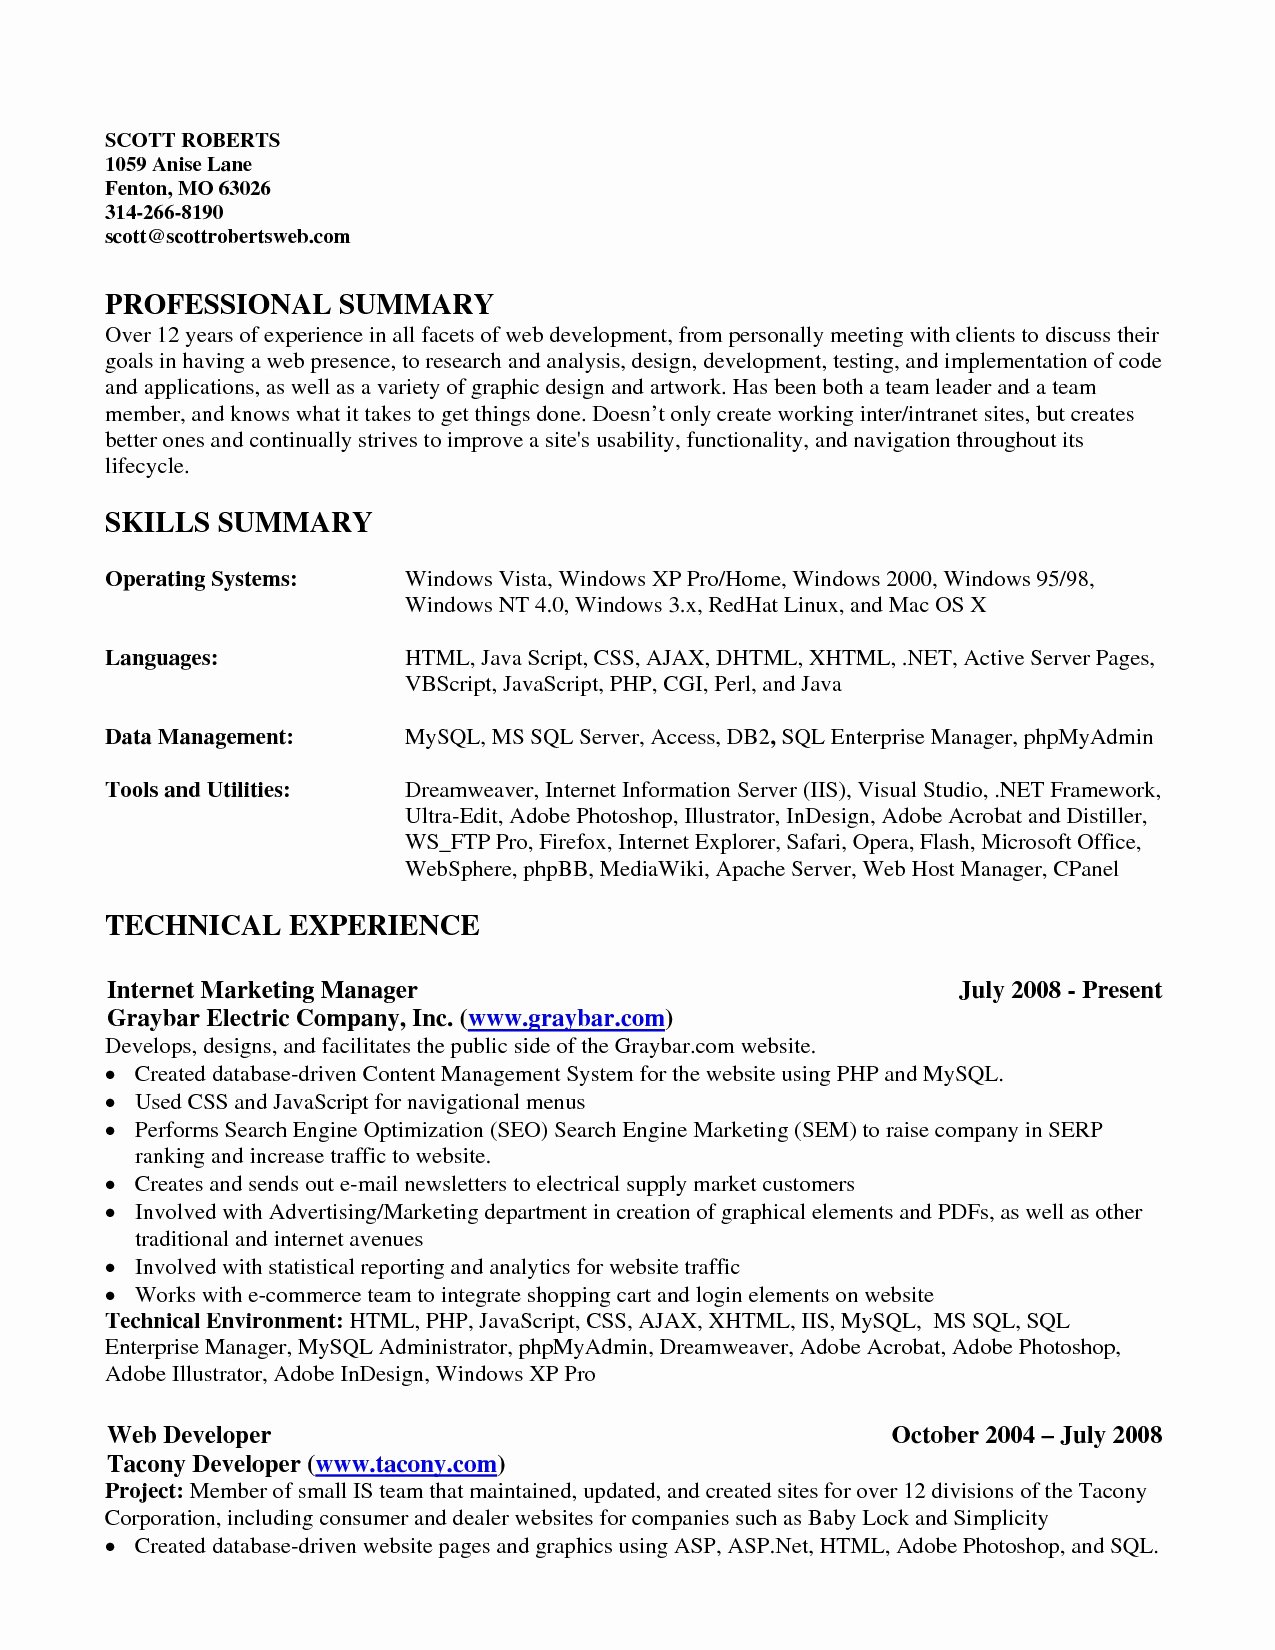 Resume Skills Summary